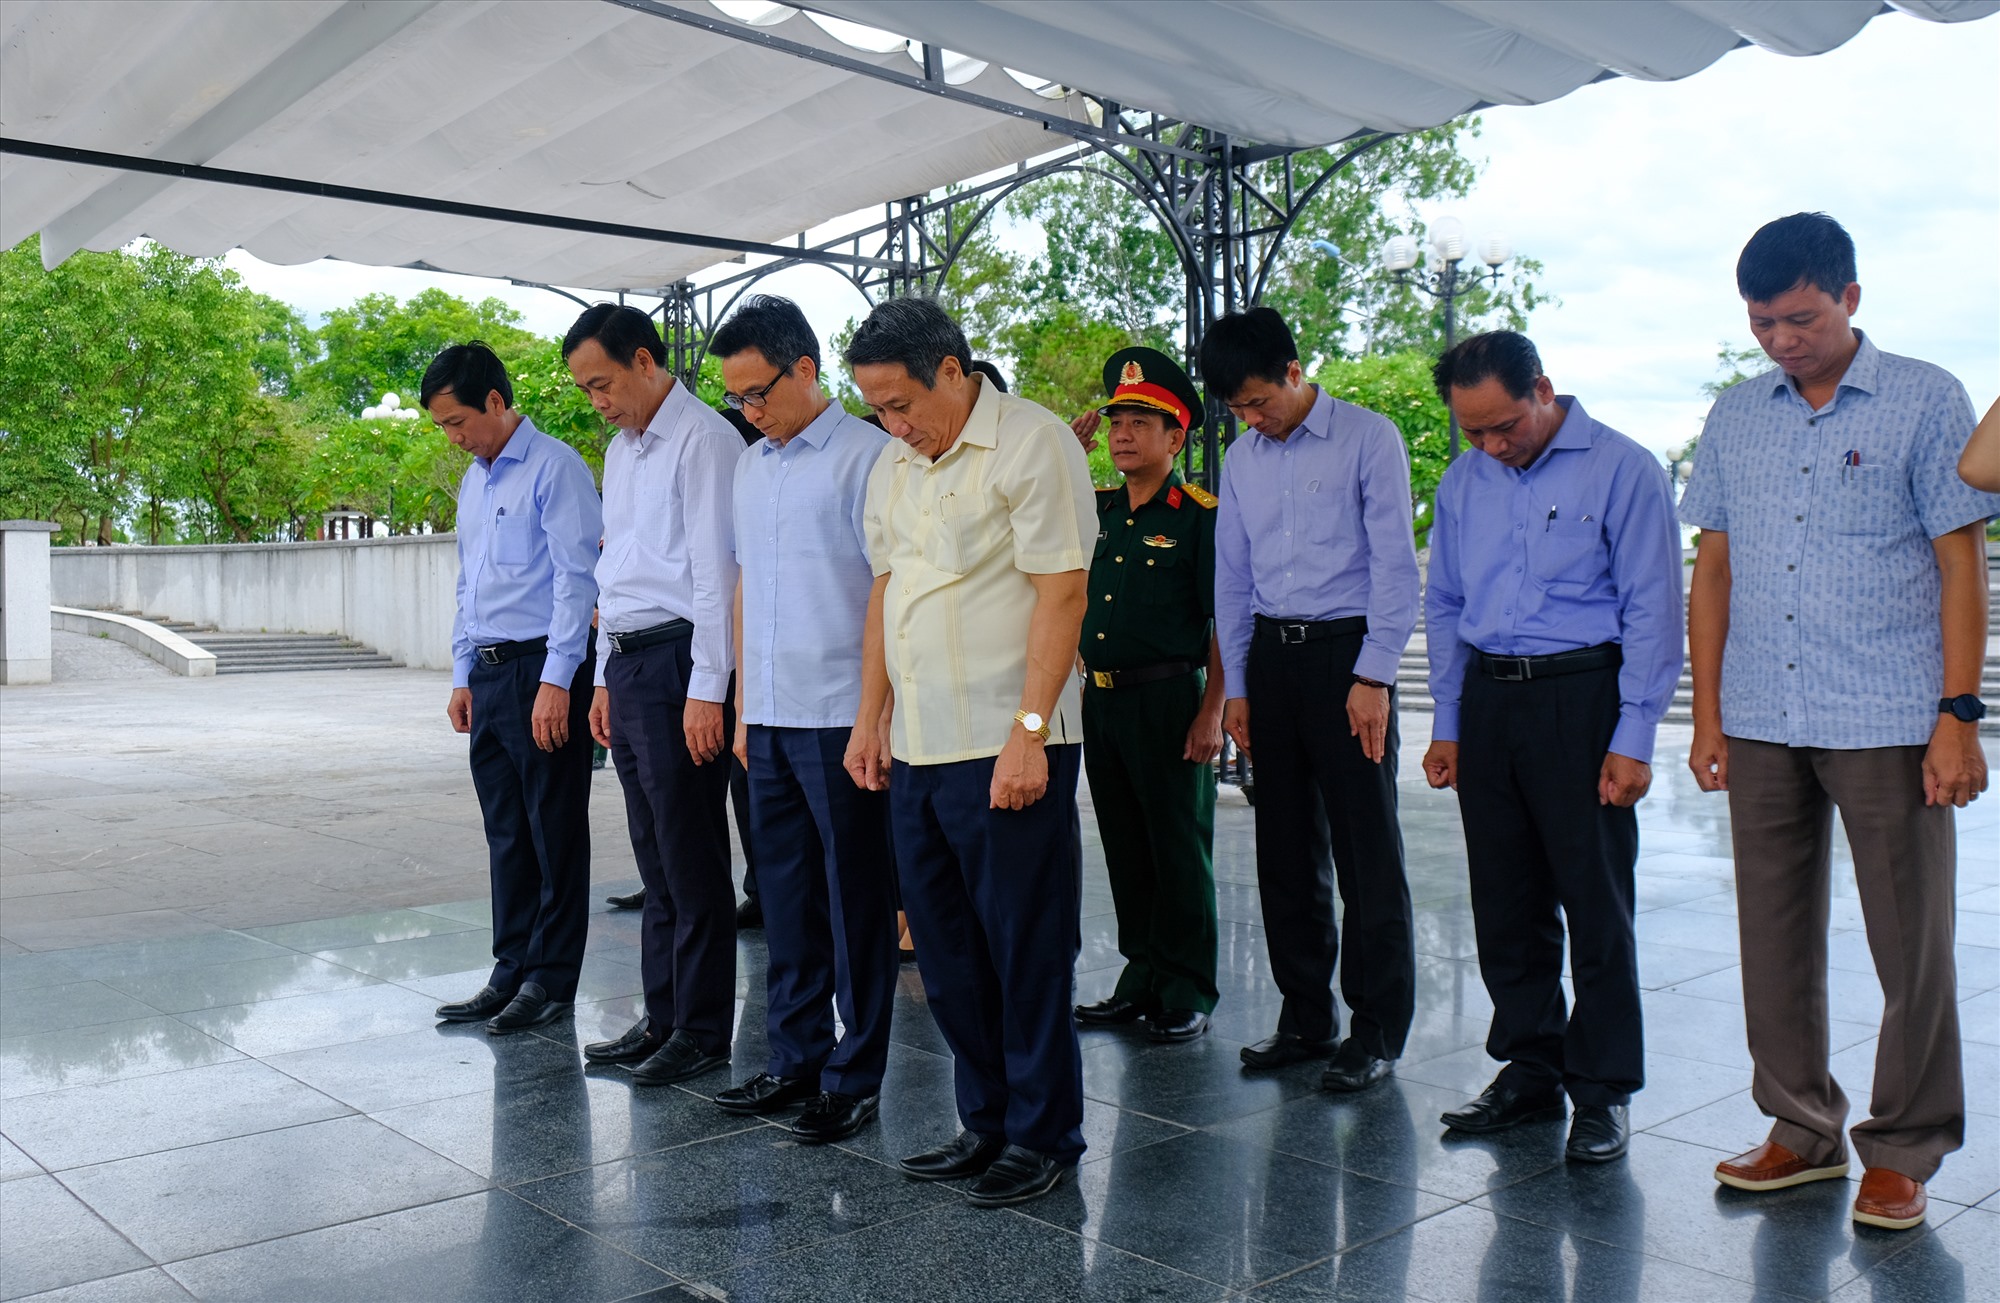 Phó Thủ tướng Chính phủ Vũ Đức Đam và lãnh đạo tỉnh tưởng nhớ các anh hùng liệt sĩ tại Nghĩa trang Liệt sĩ quốc gia Đường 9 - Ảnh: Trần Tuyền